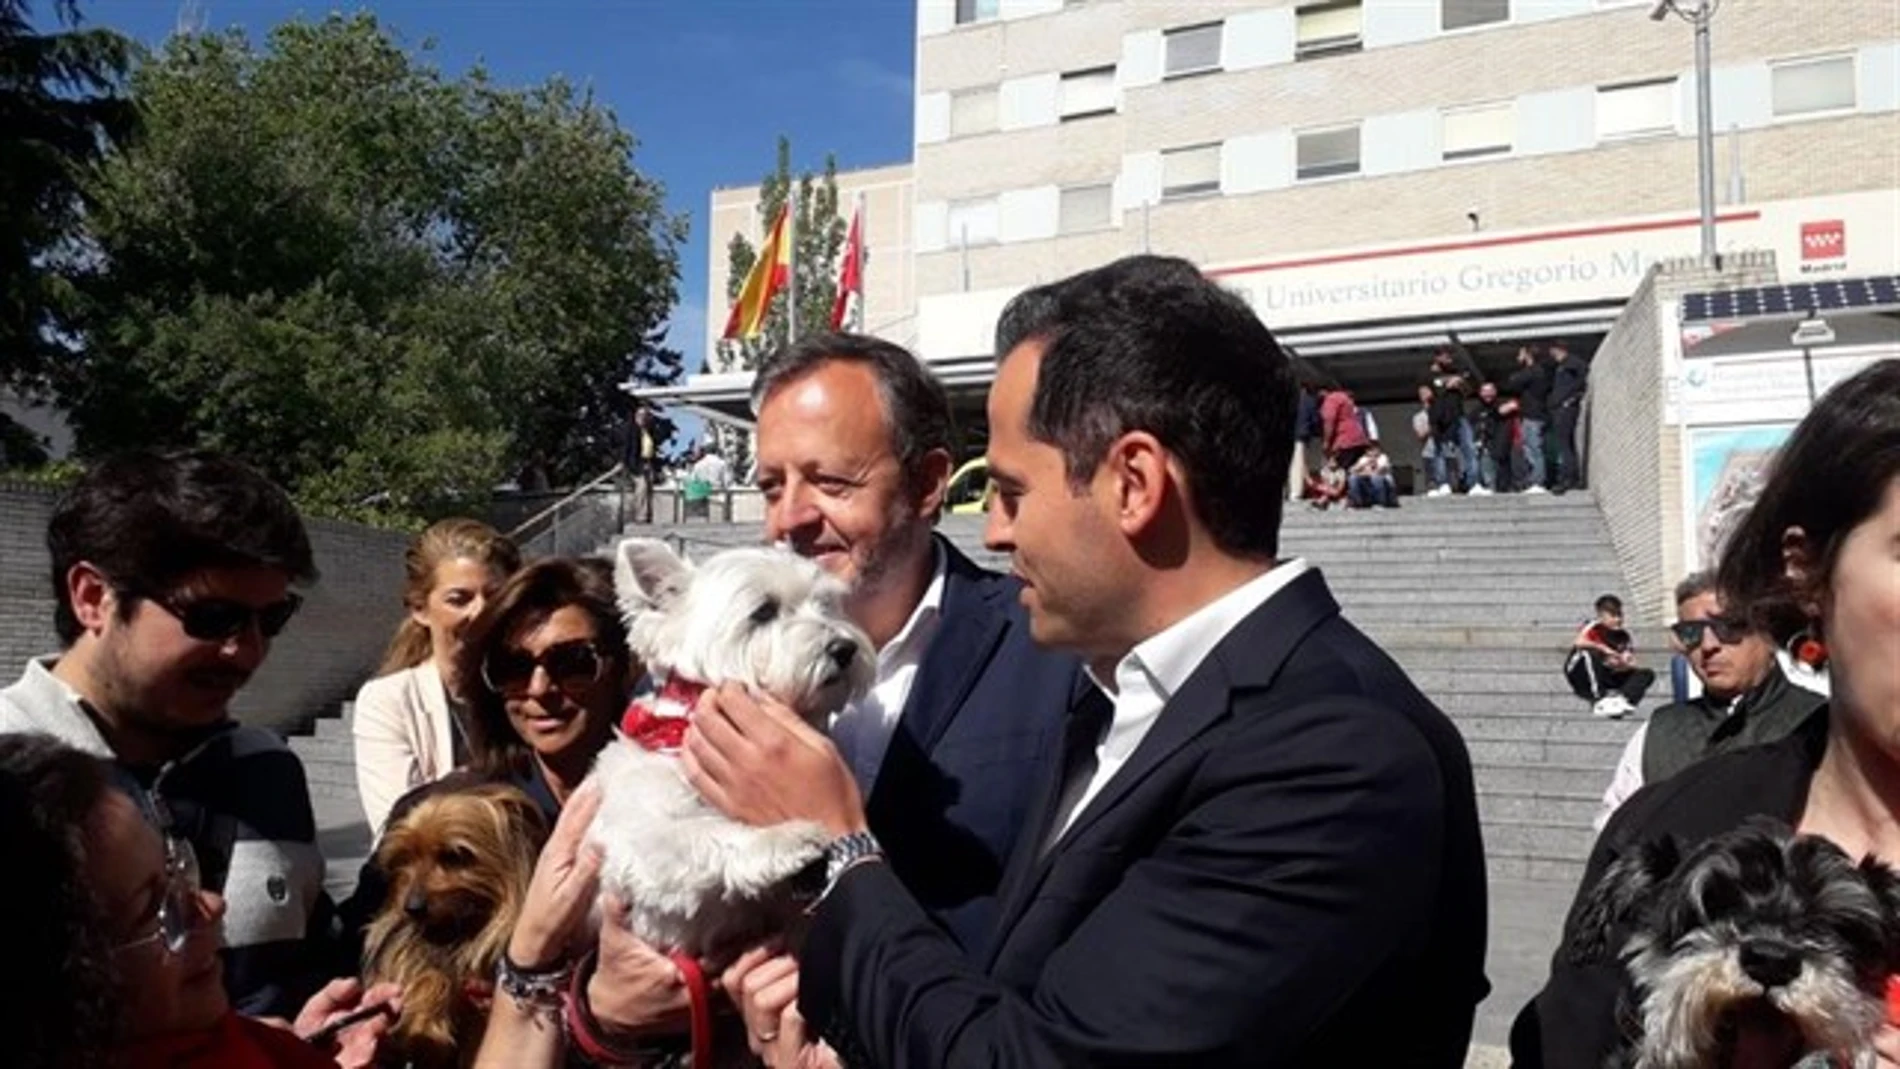 El candidato de Ciudadanos a la Comunidad de Madrid, Ignacio Aguado, a las puertas del Hospital Gregiorio Marañón / Foto: Ep